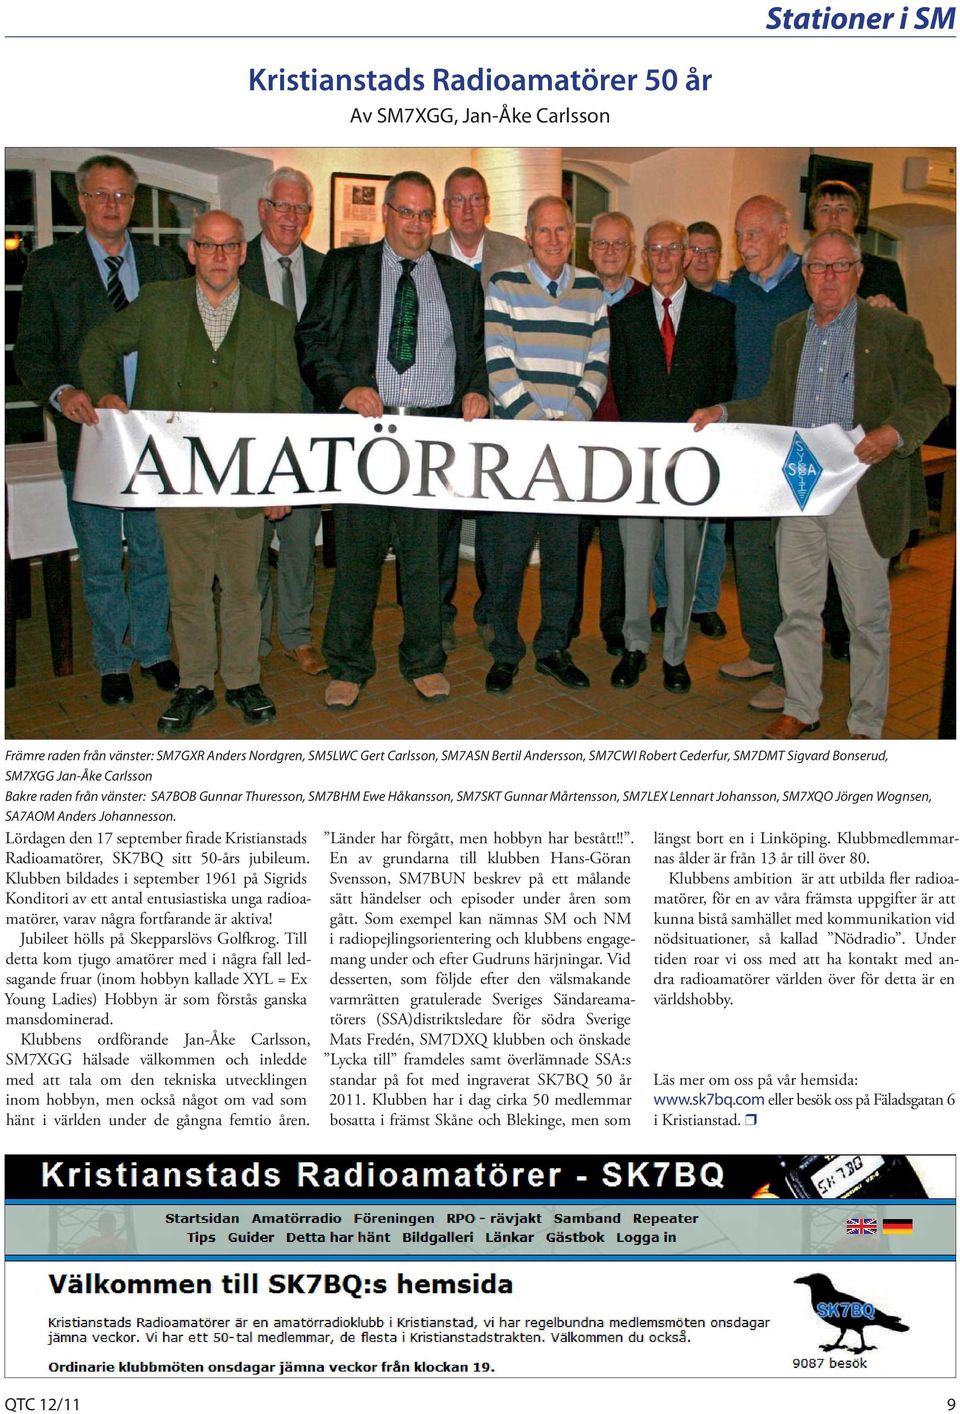 SA7AOM Anders Johannesson. Lördagen den 17 september firade Kristianstads Radioamatörer, SK7BQ sitt 50-års jubileum.